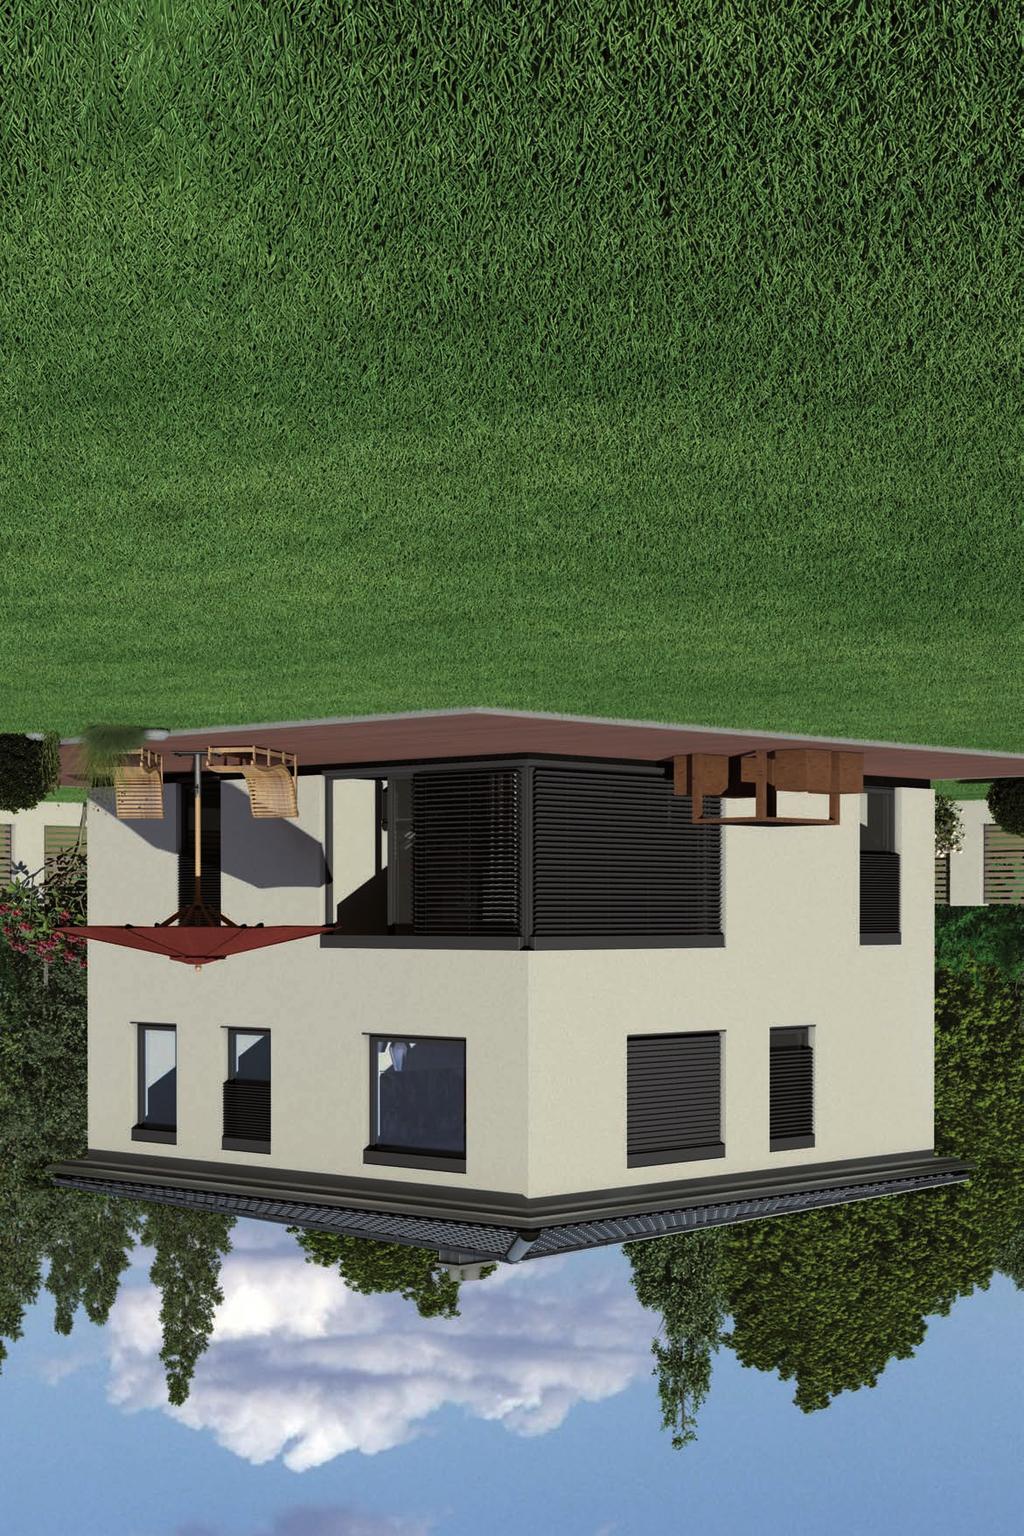 Der Ergoldsbacher E58 RS verbindet moderne Architektur mit den Vorzügen eines Steildaches. Viele Bauherren wünschen sich ein Haus mit einer zeitgemäßen, klaren Form.